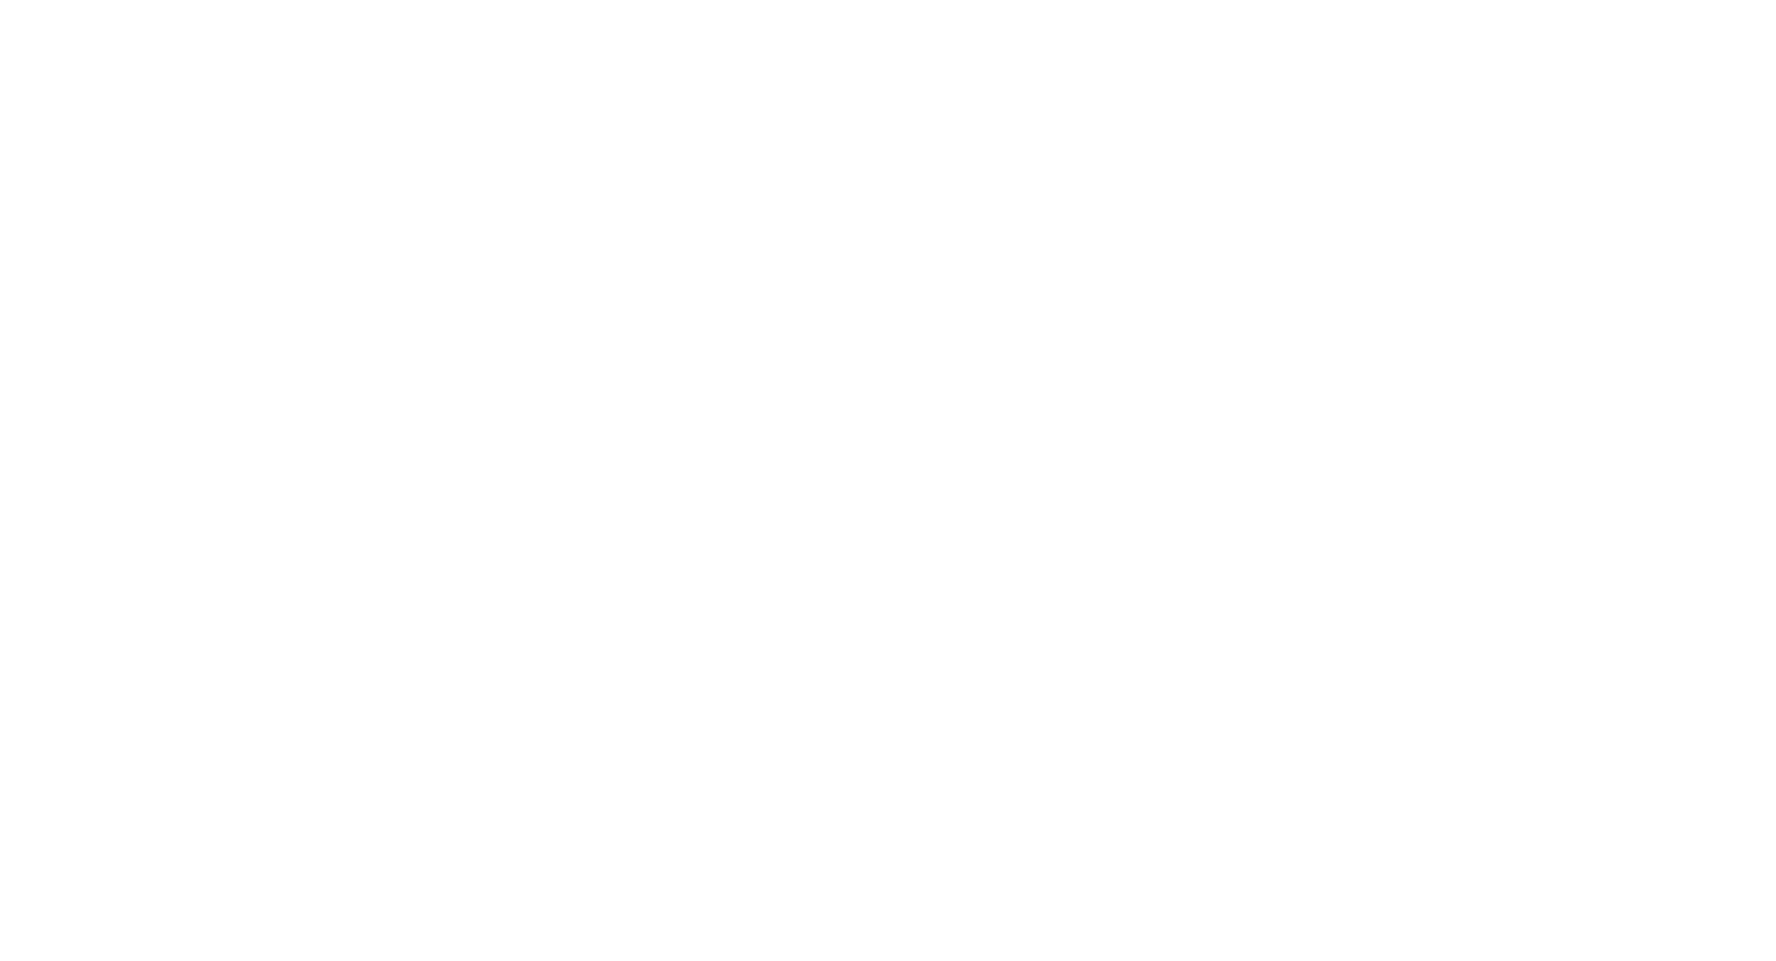 Electric Espresso Logo